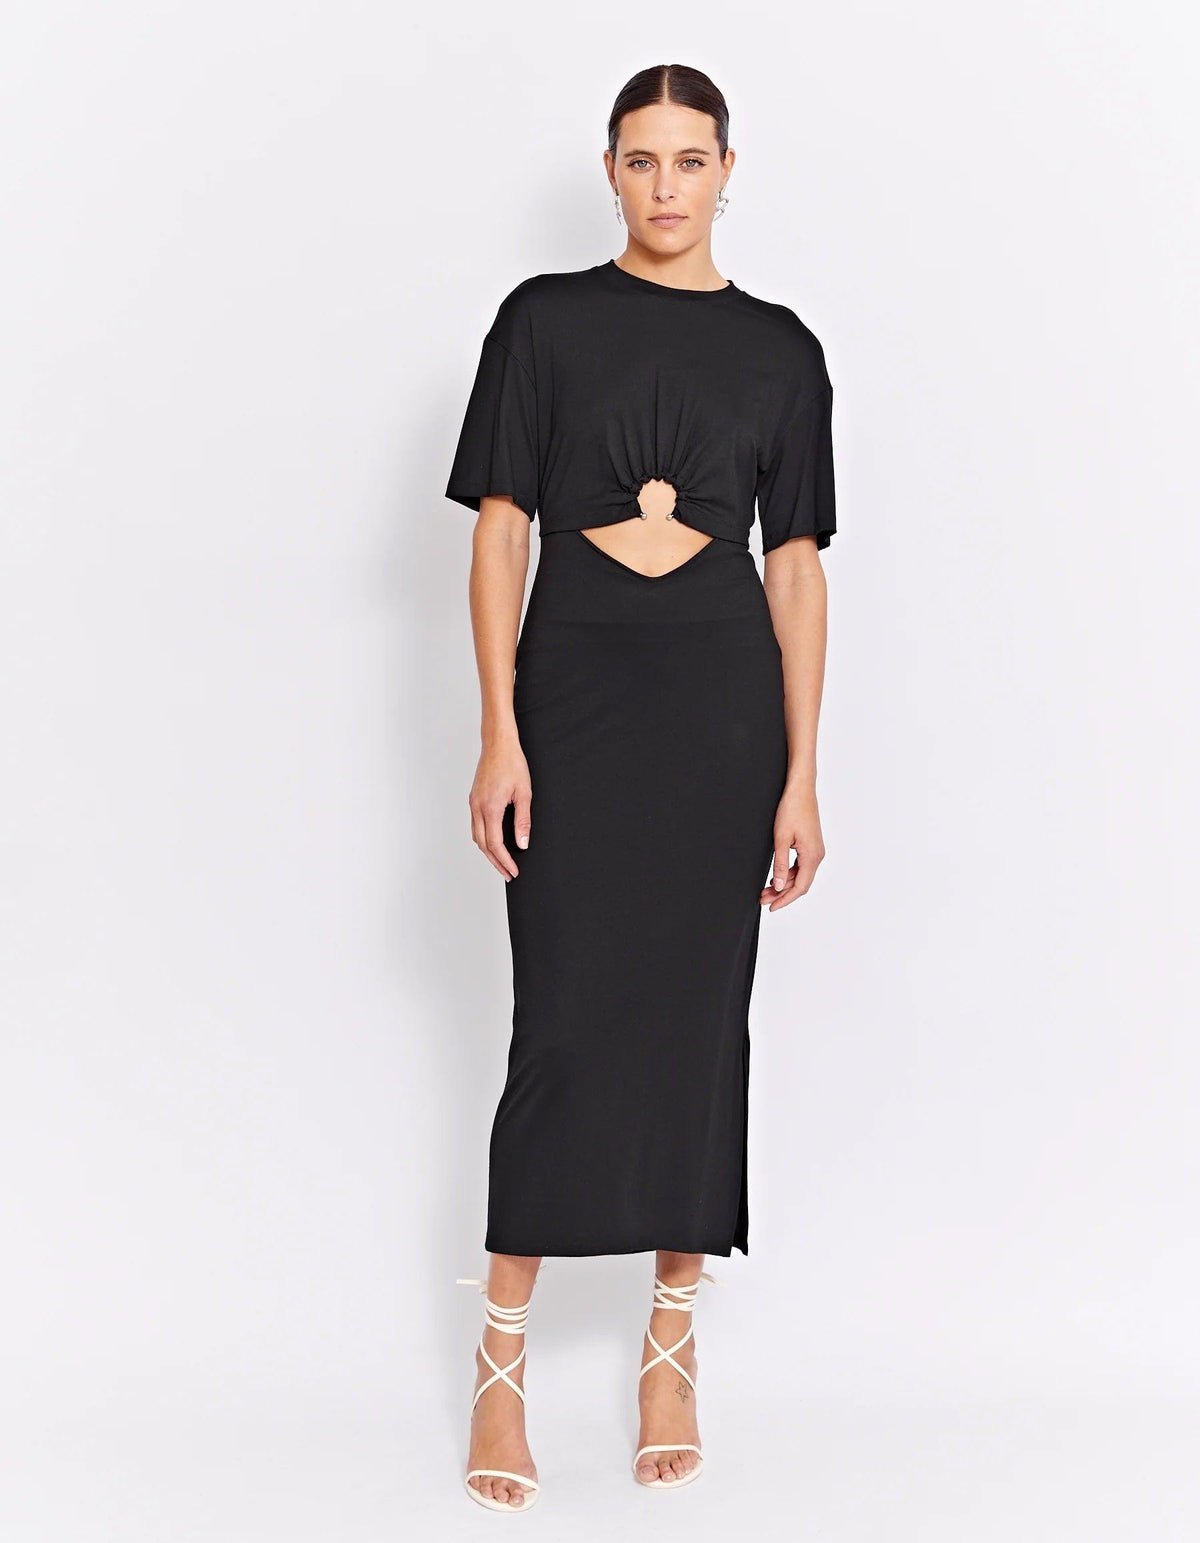 MURPHY DRESS | BLACK - FLTRD UAE